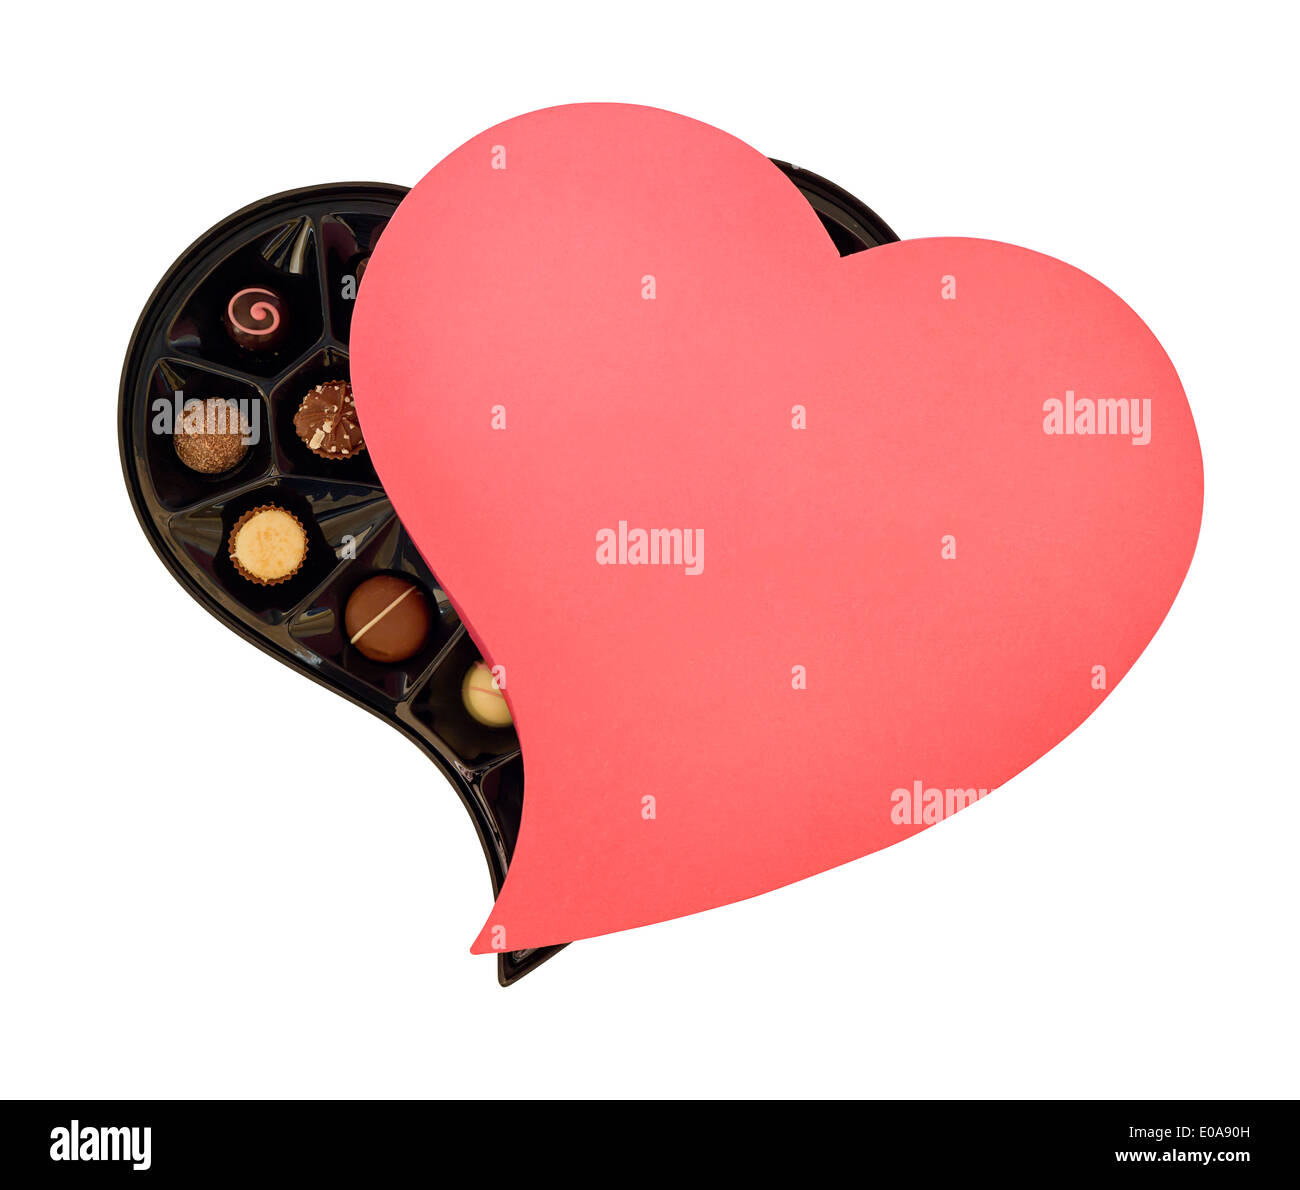 Herzförmige Schachtel Pralinen das perfekte Geschenk für Ihre liebsten am Valentinstag oder Schokolade-Liebhaber Stockfoto